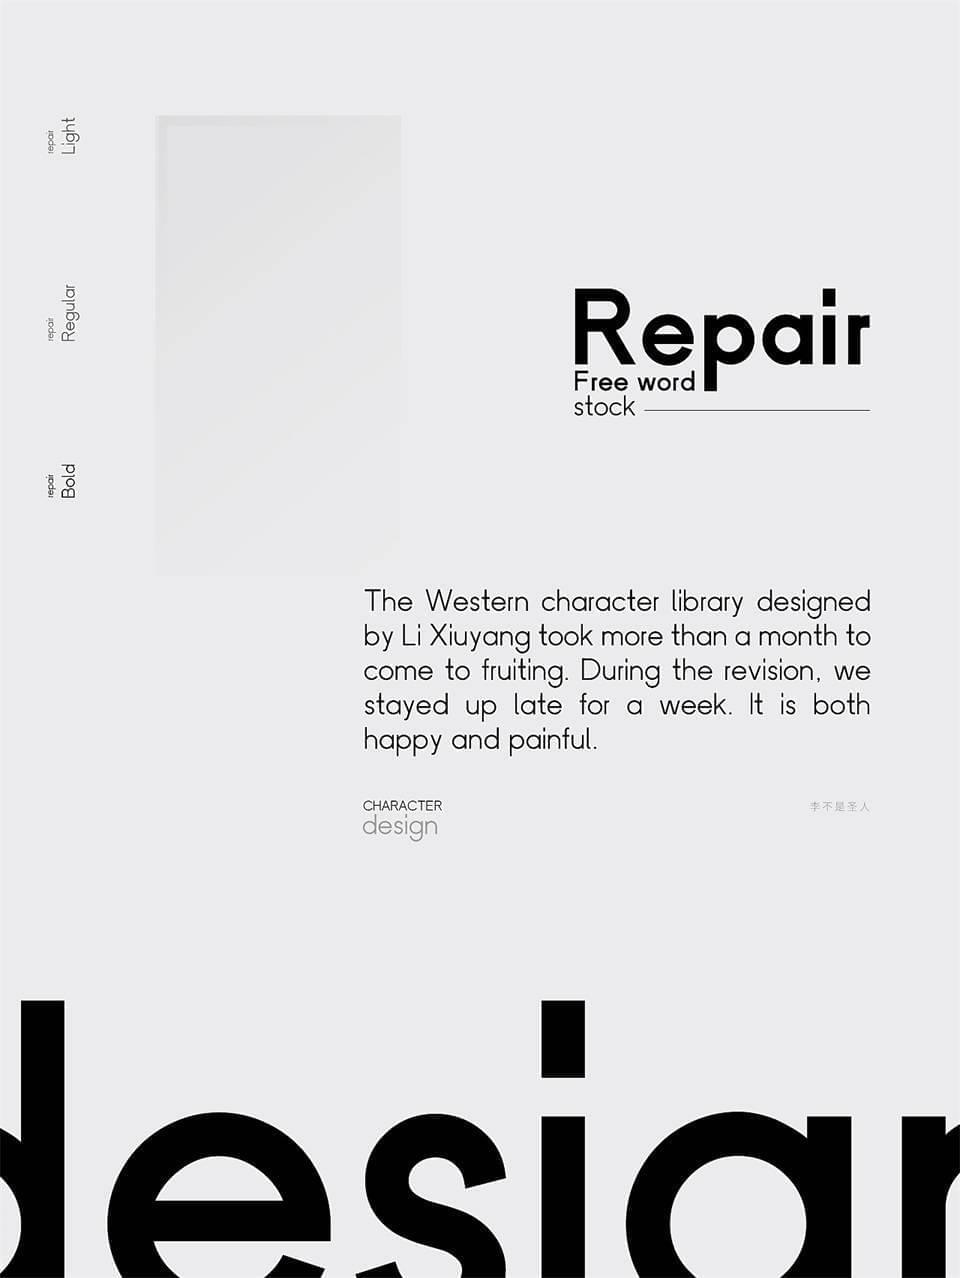 Repair5348,repair,字体,引见,免费,费英